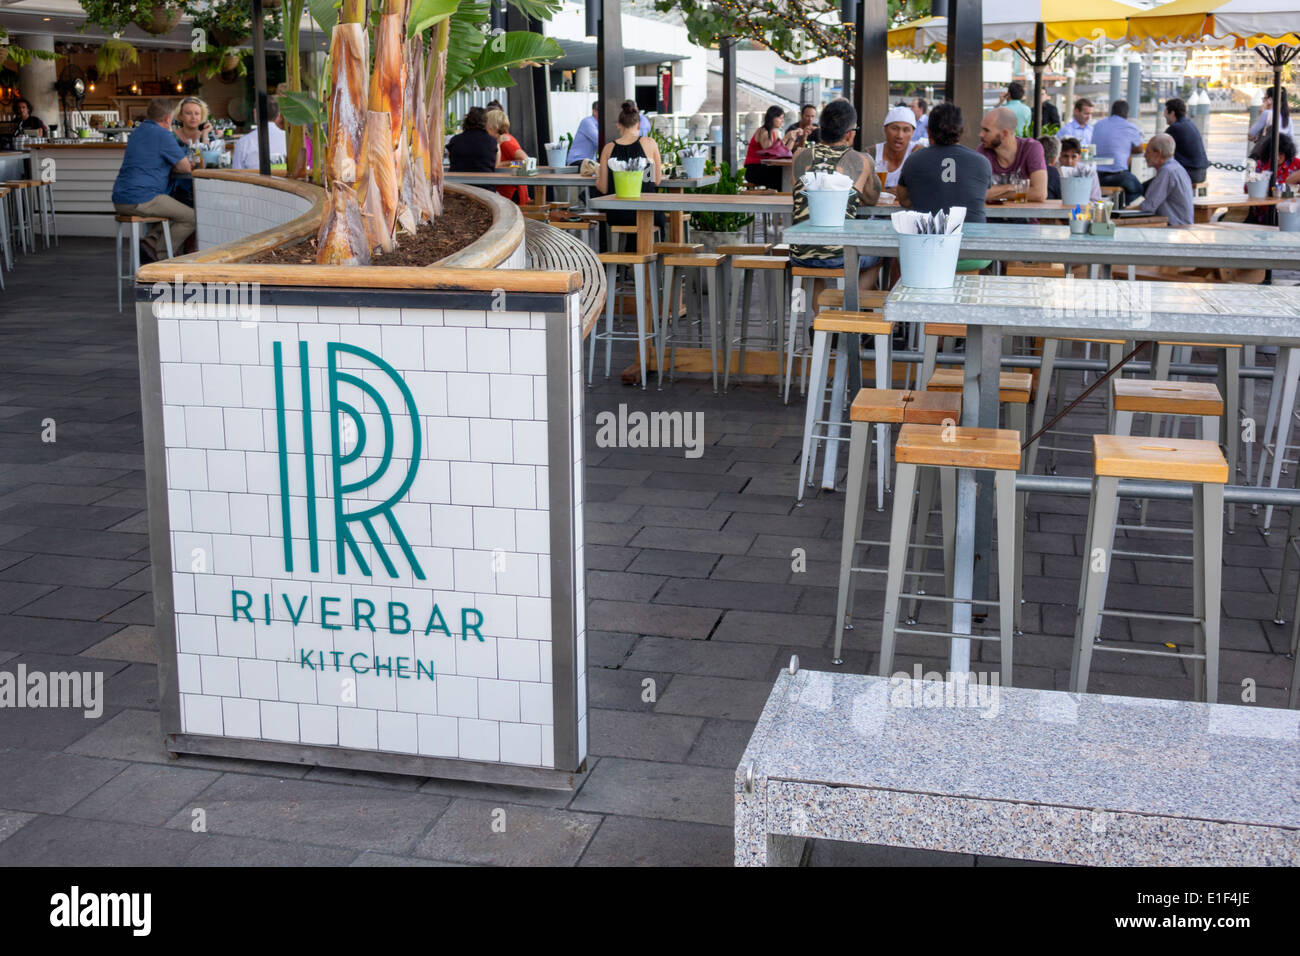 Brisbane Australie, Eagle Street Pier, Brisbane River, Riverside Center, centre, Riverbar cuisine, restaurant restaurants repas café cafés, al fresco s Banque D'Images